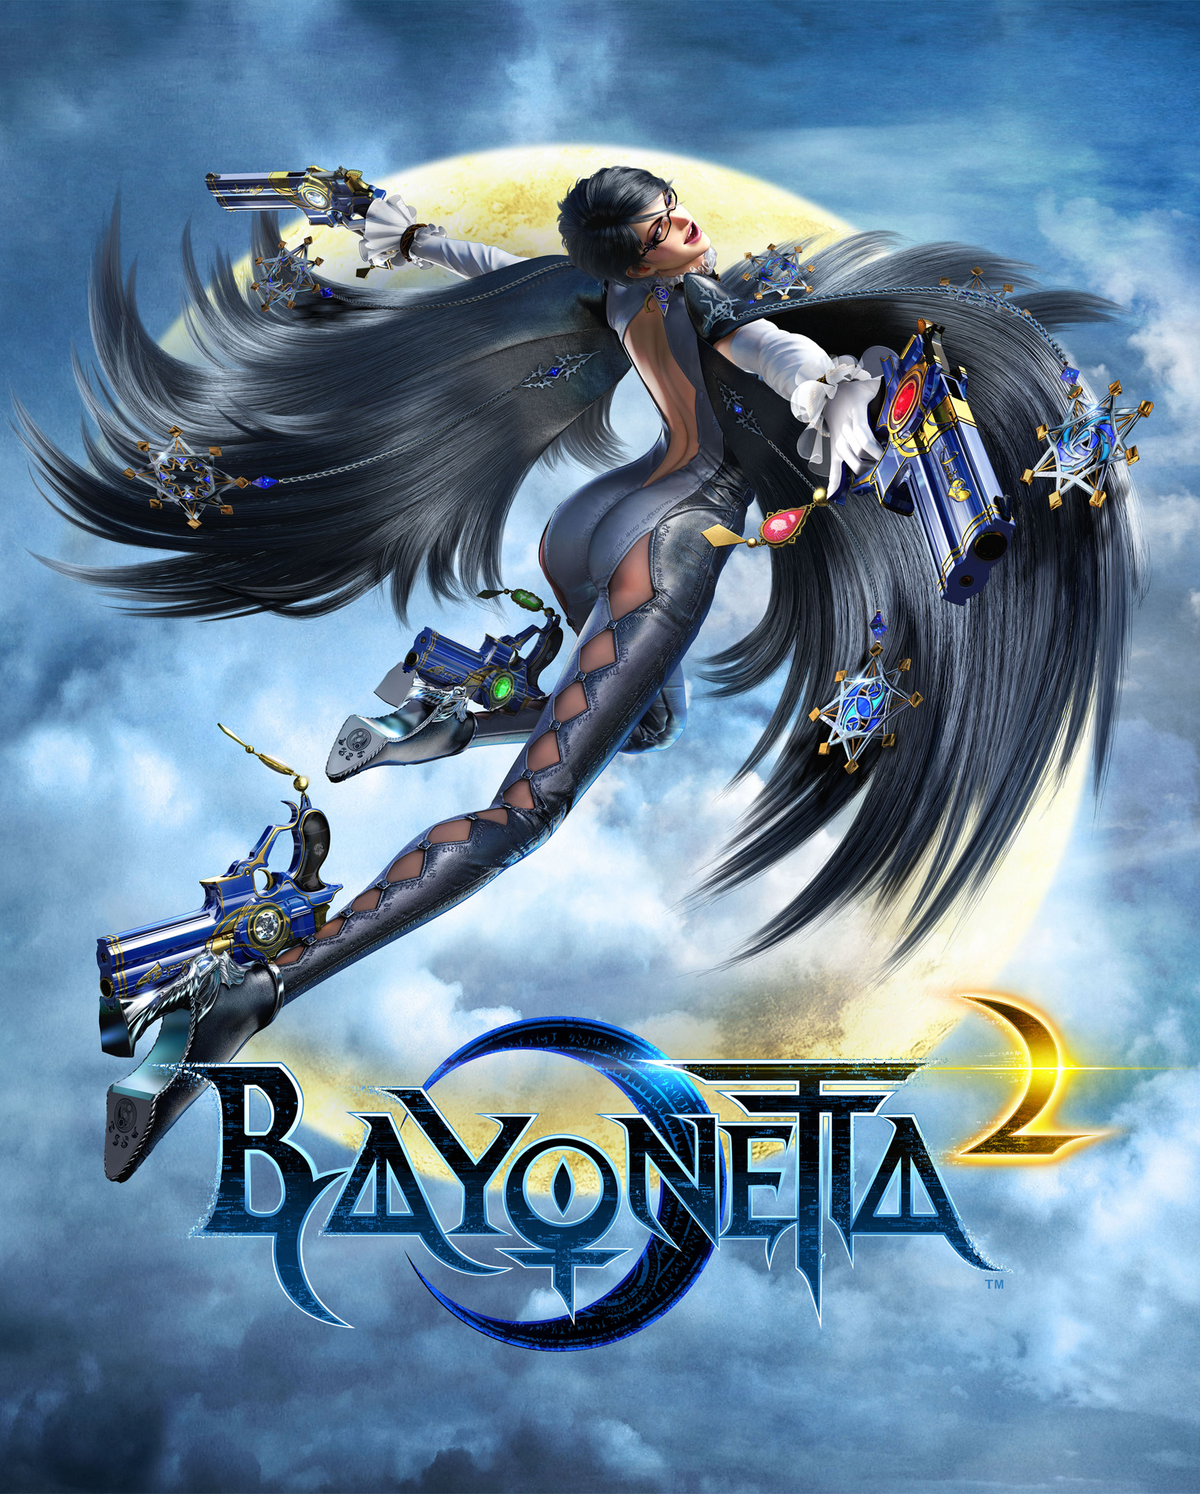 Bayonetta 2 Serious Mode/Bayonetta1 PC mod. : r/Bayonetta